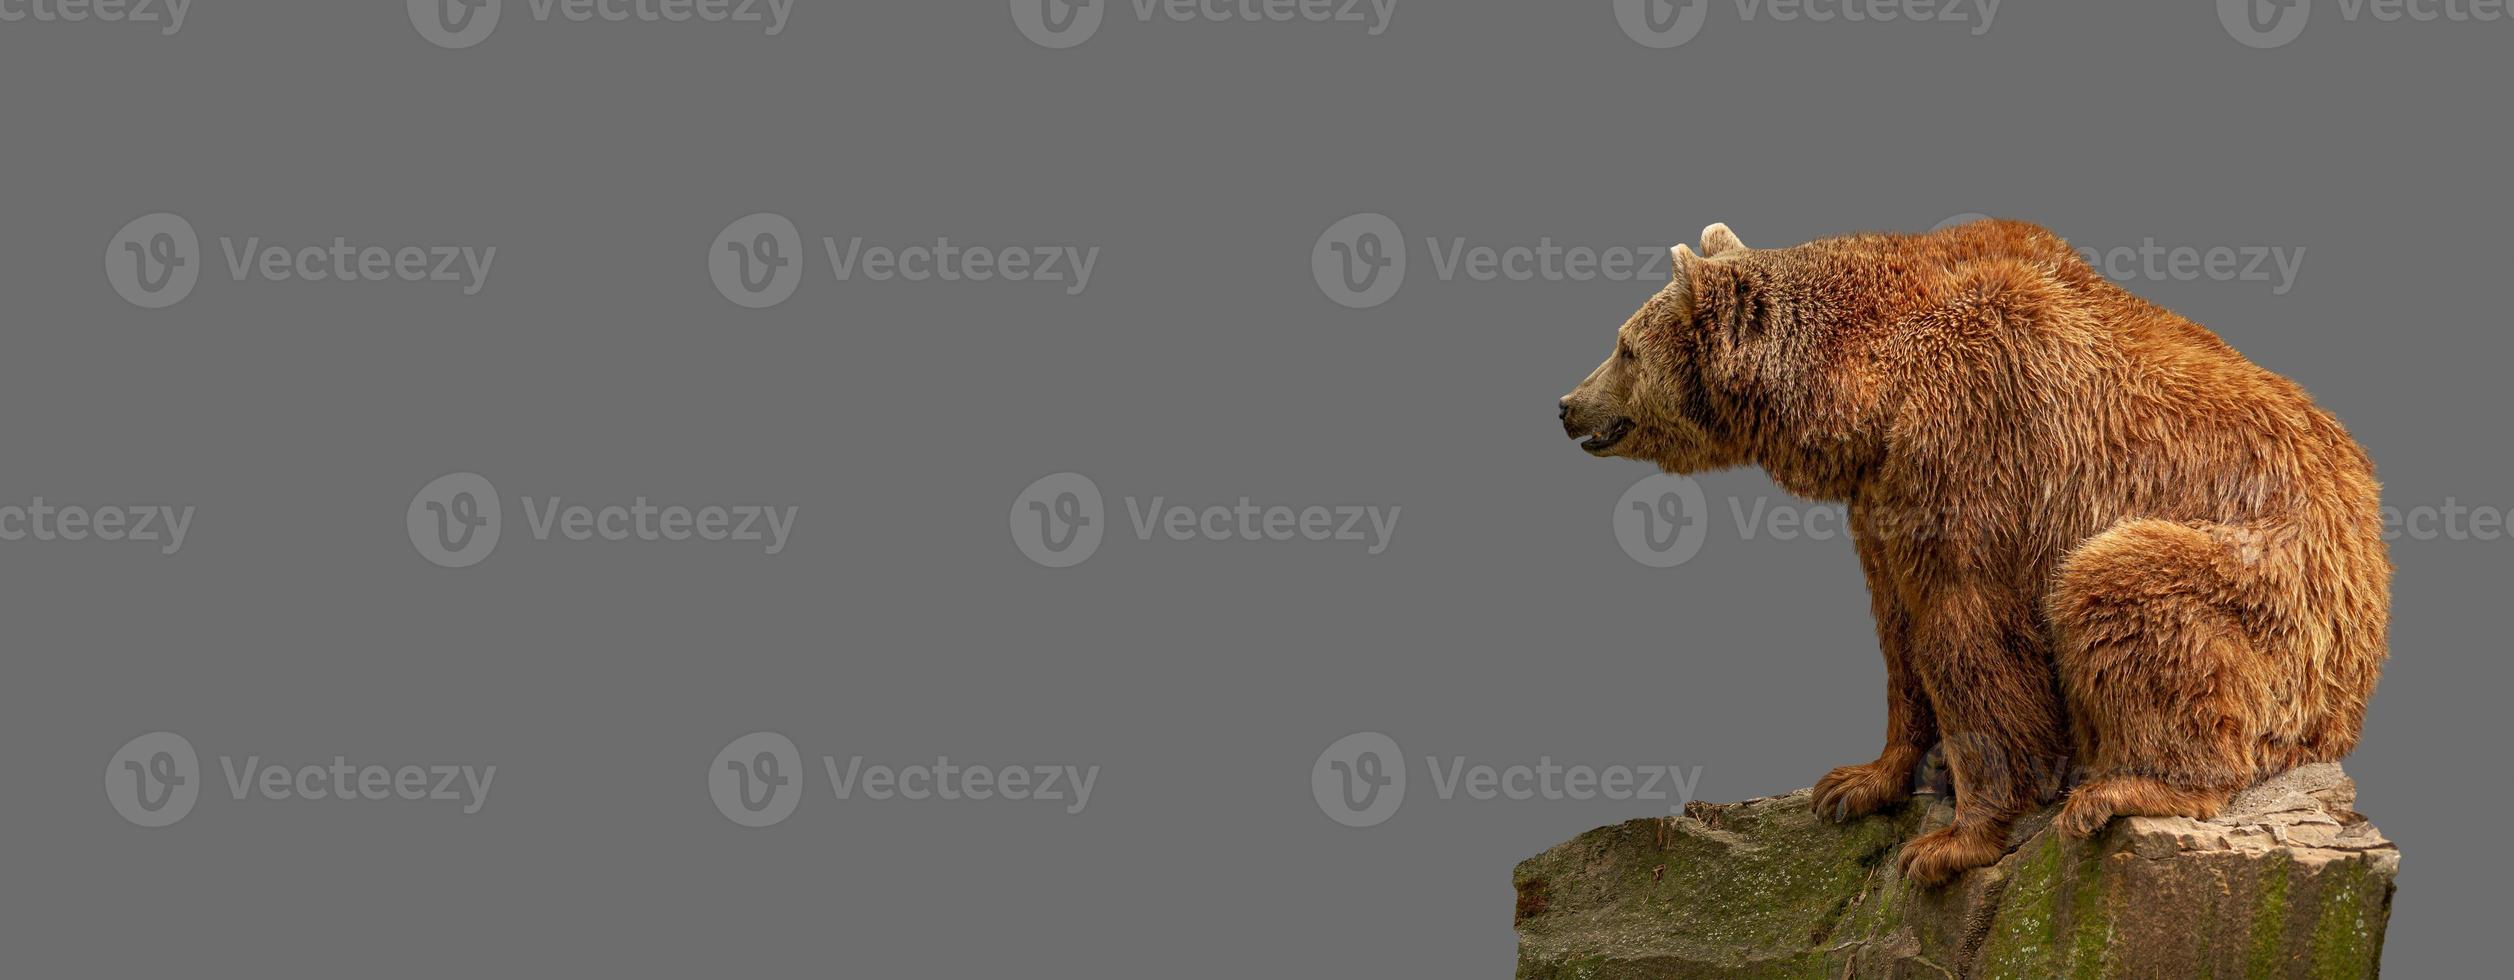 pancarta con gran oso pardo solitario sentado en una roca en un fondo gris sólido con espacio para copiar texto, concepto de biodiversidad de vida silvestre, bienestar animal, sostenibilidad y conservación. foto